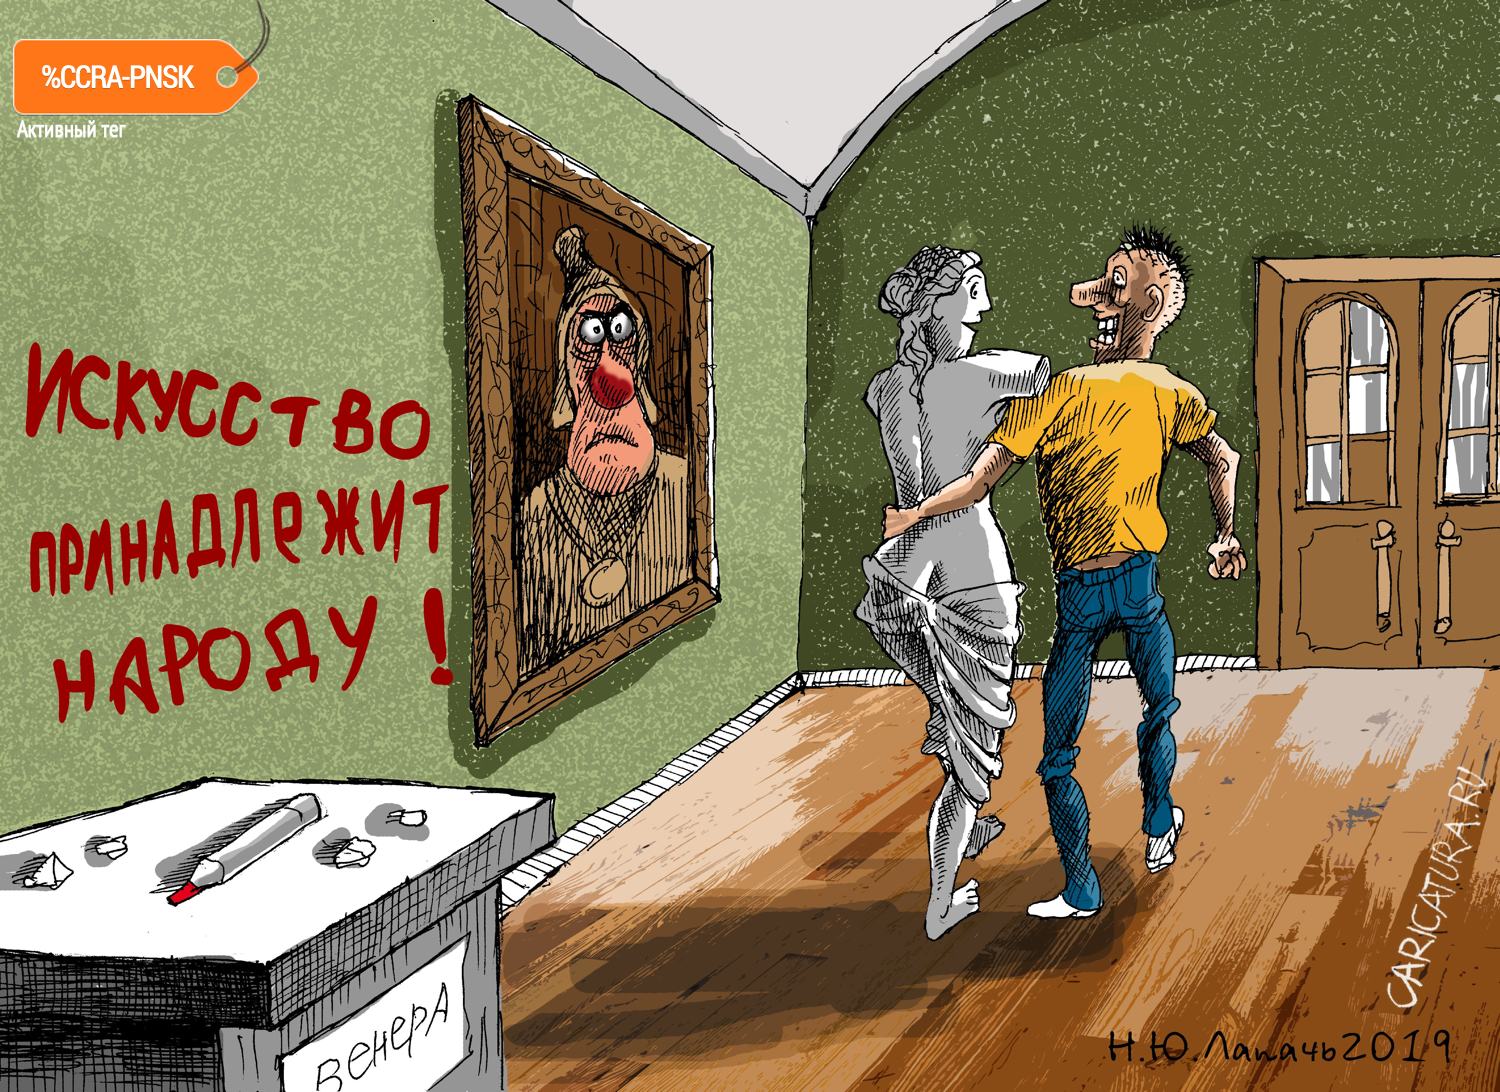 Карикатура "Пигмалион", Теплый Телогрей